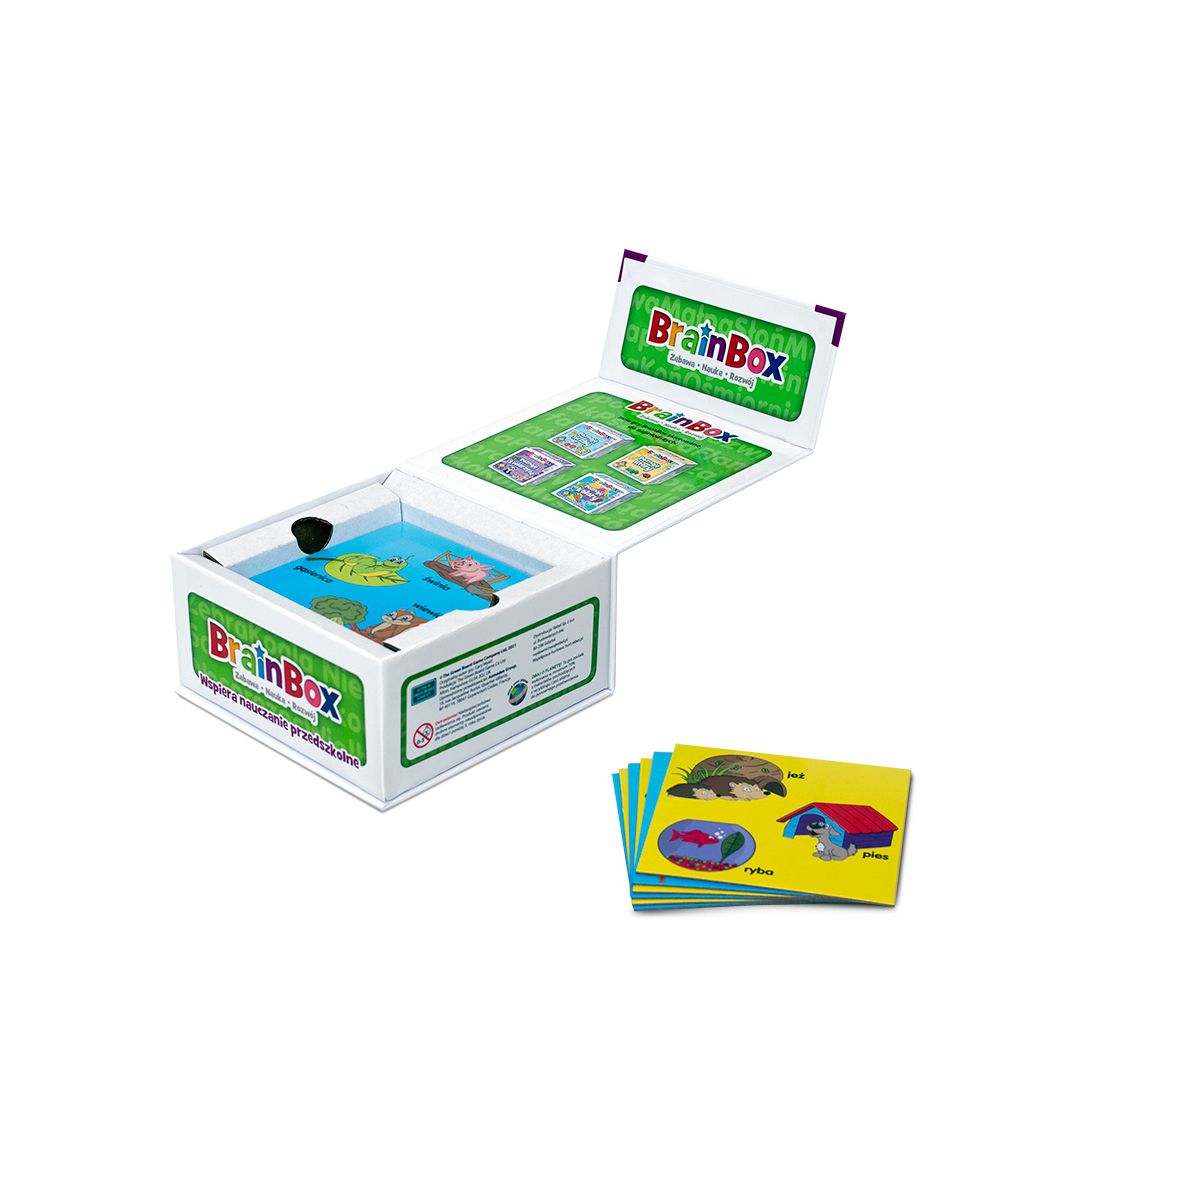 Gra edukacyjna Rebel BrainBox -Poznaję domy zwierząt (5902650616691)